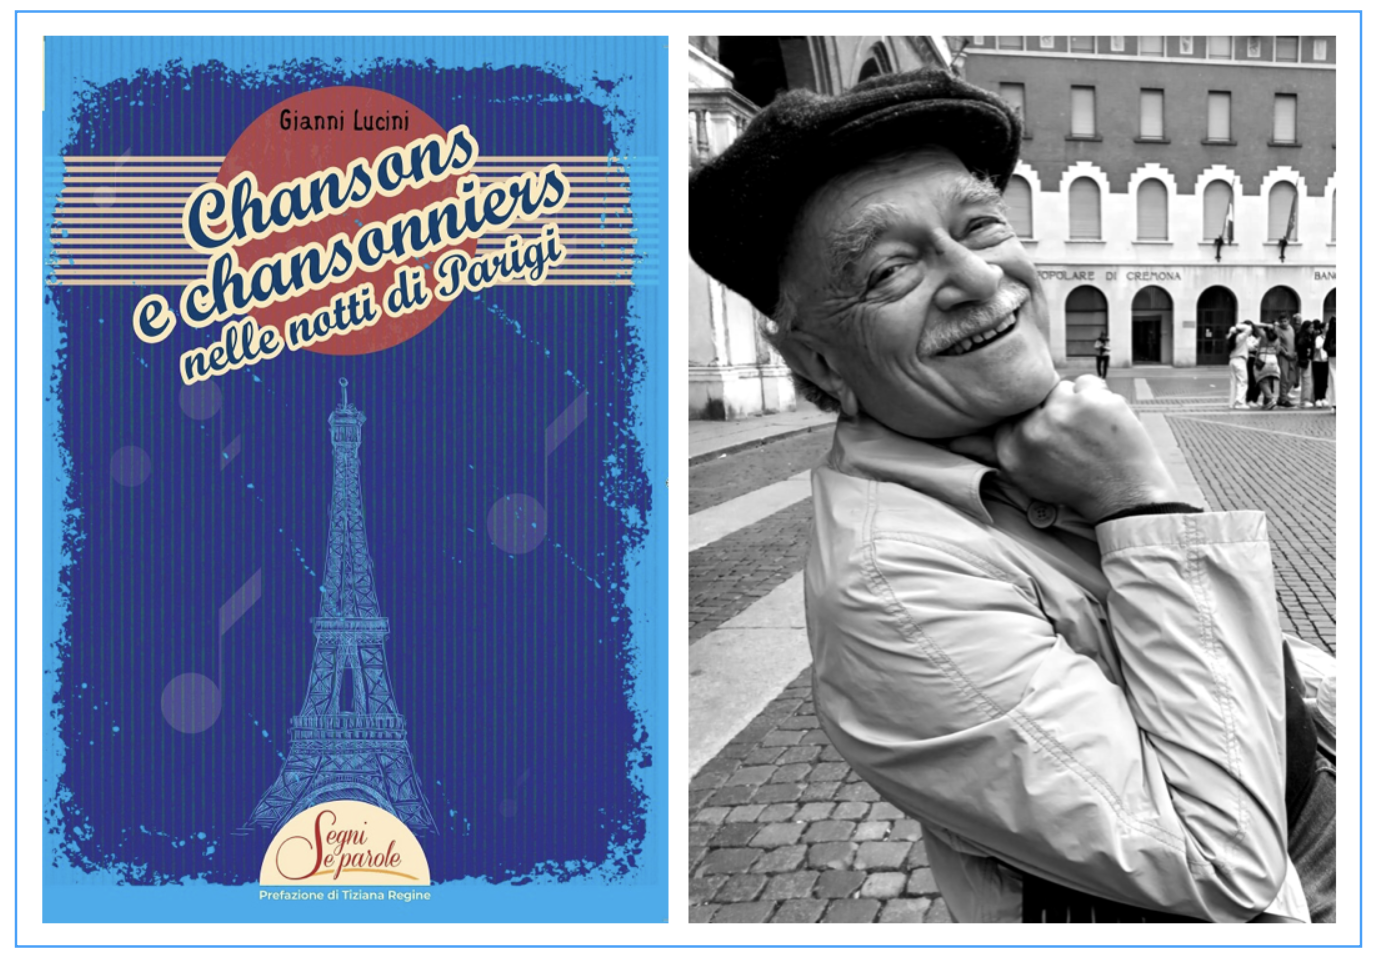 Chansons e Chansonniers nelle notti di Parigi - Gianni Lucini 2